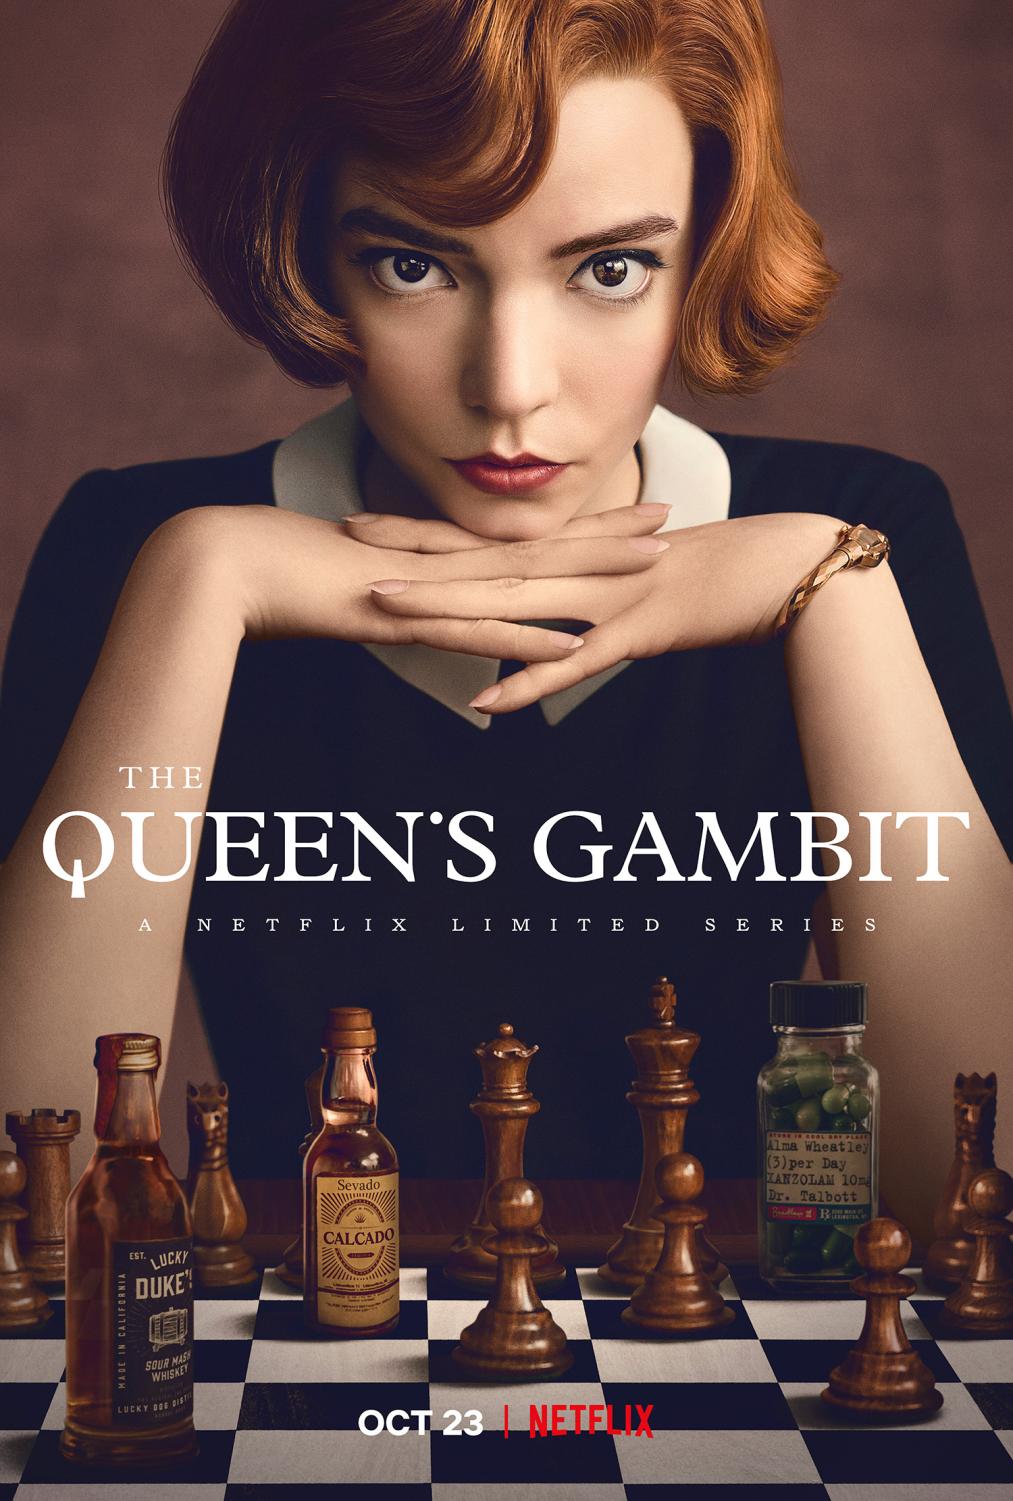 Elizabeth Harmon Edit  The queen's gambit, Queen's gambit, Anya taylor joy